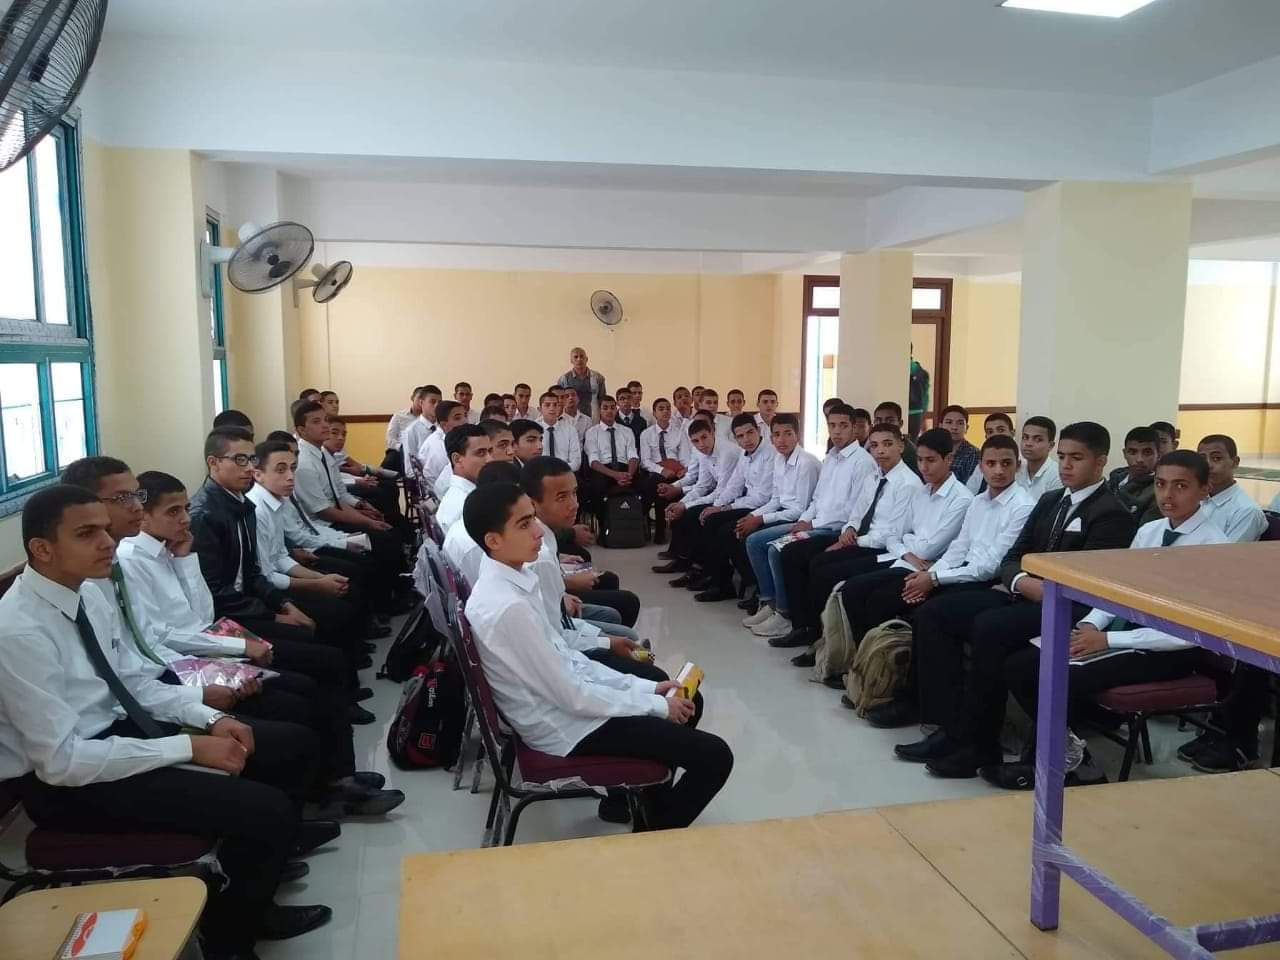 النيلي يعقد اجتماعا مع الطلاب الجدد بالمدرسة النووية بمدينة الضبعة .